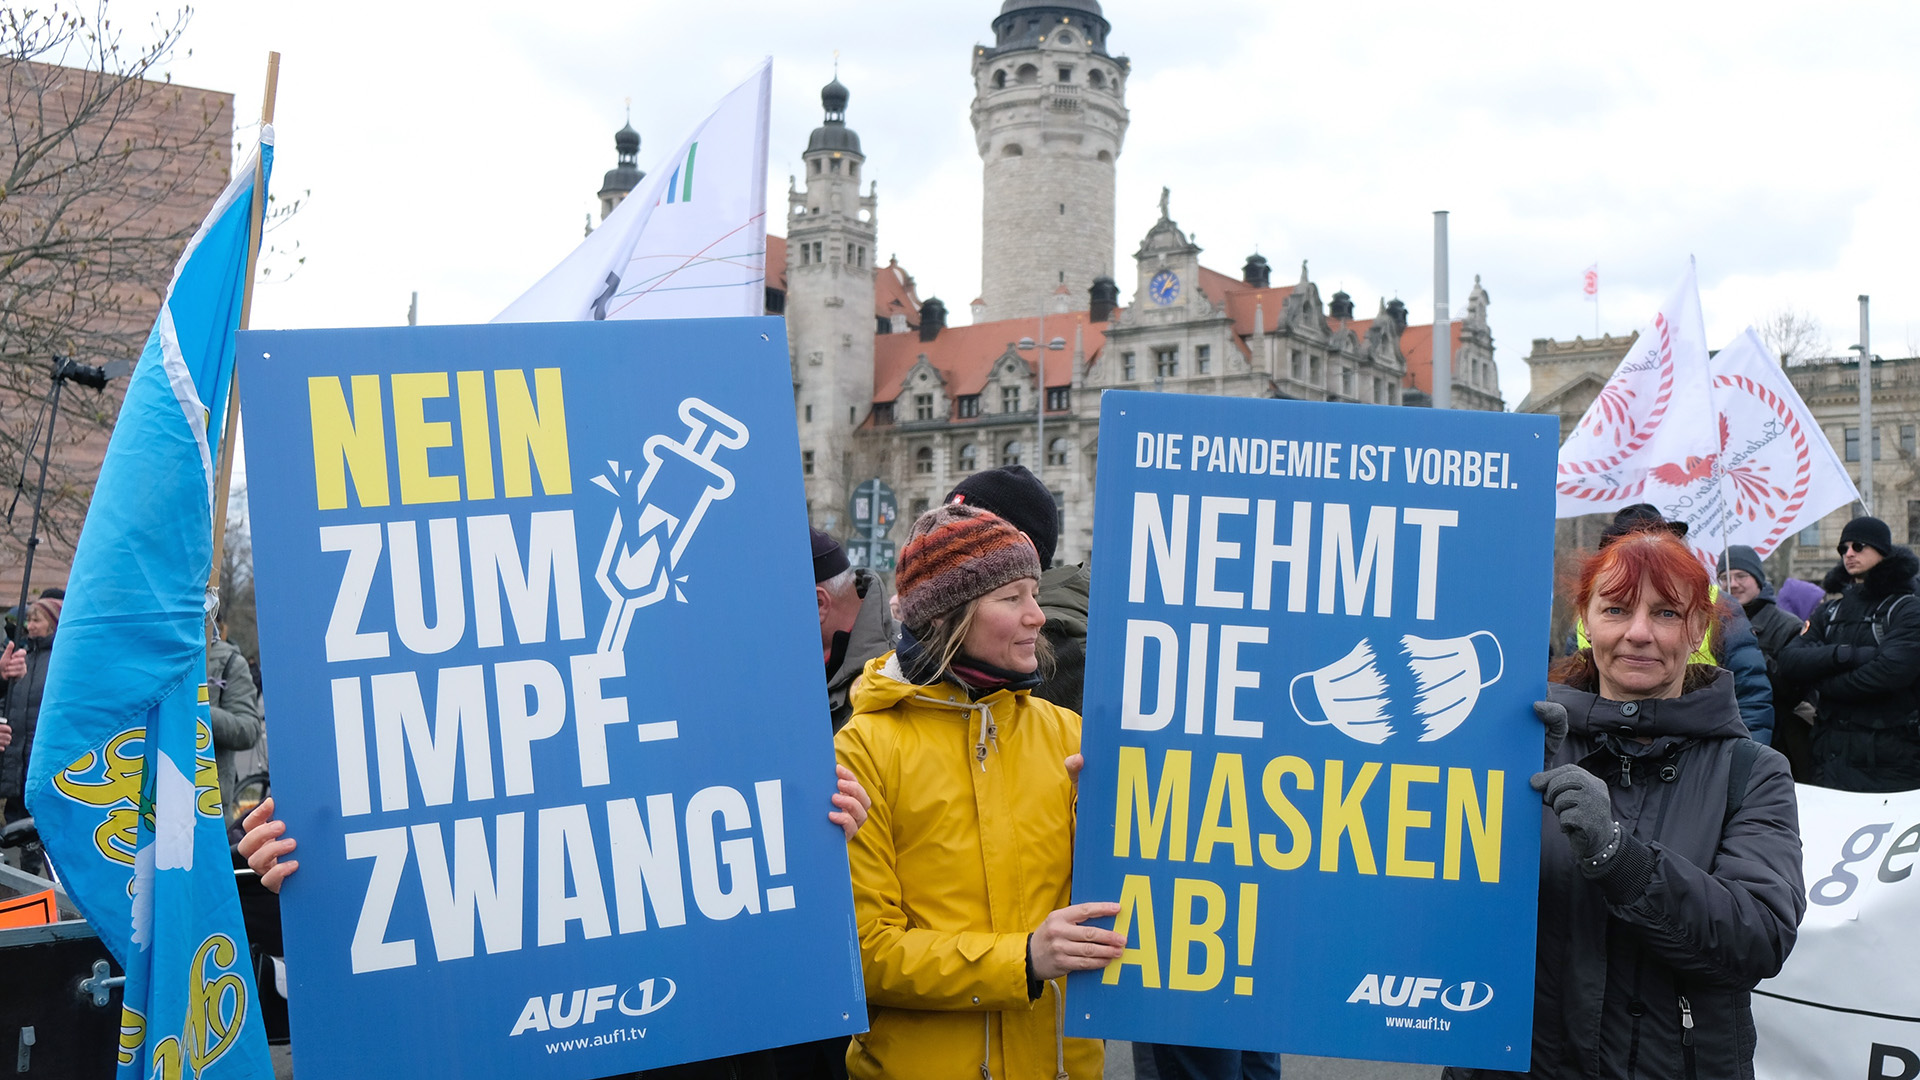 Teilnehmerinnen einer Demonstration von Gegnern der Coronamaßnahmen der Bundesregierung in Leipzig halten Schilder mit der Aufschrift "Nein zum Impfzwang" und "Nehmt die Masken ab". | picture alliance/dpa